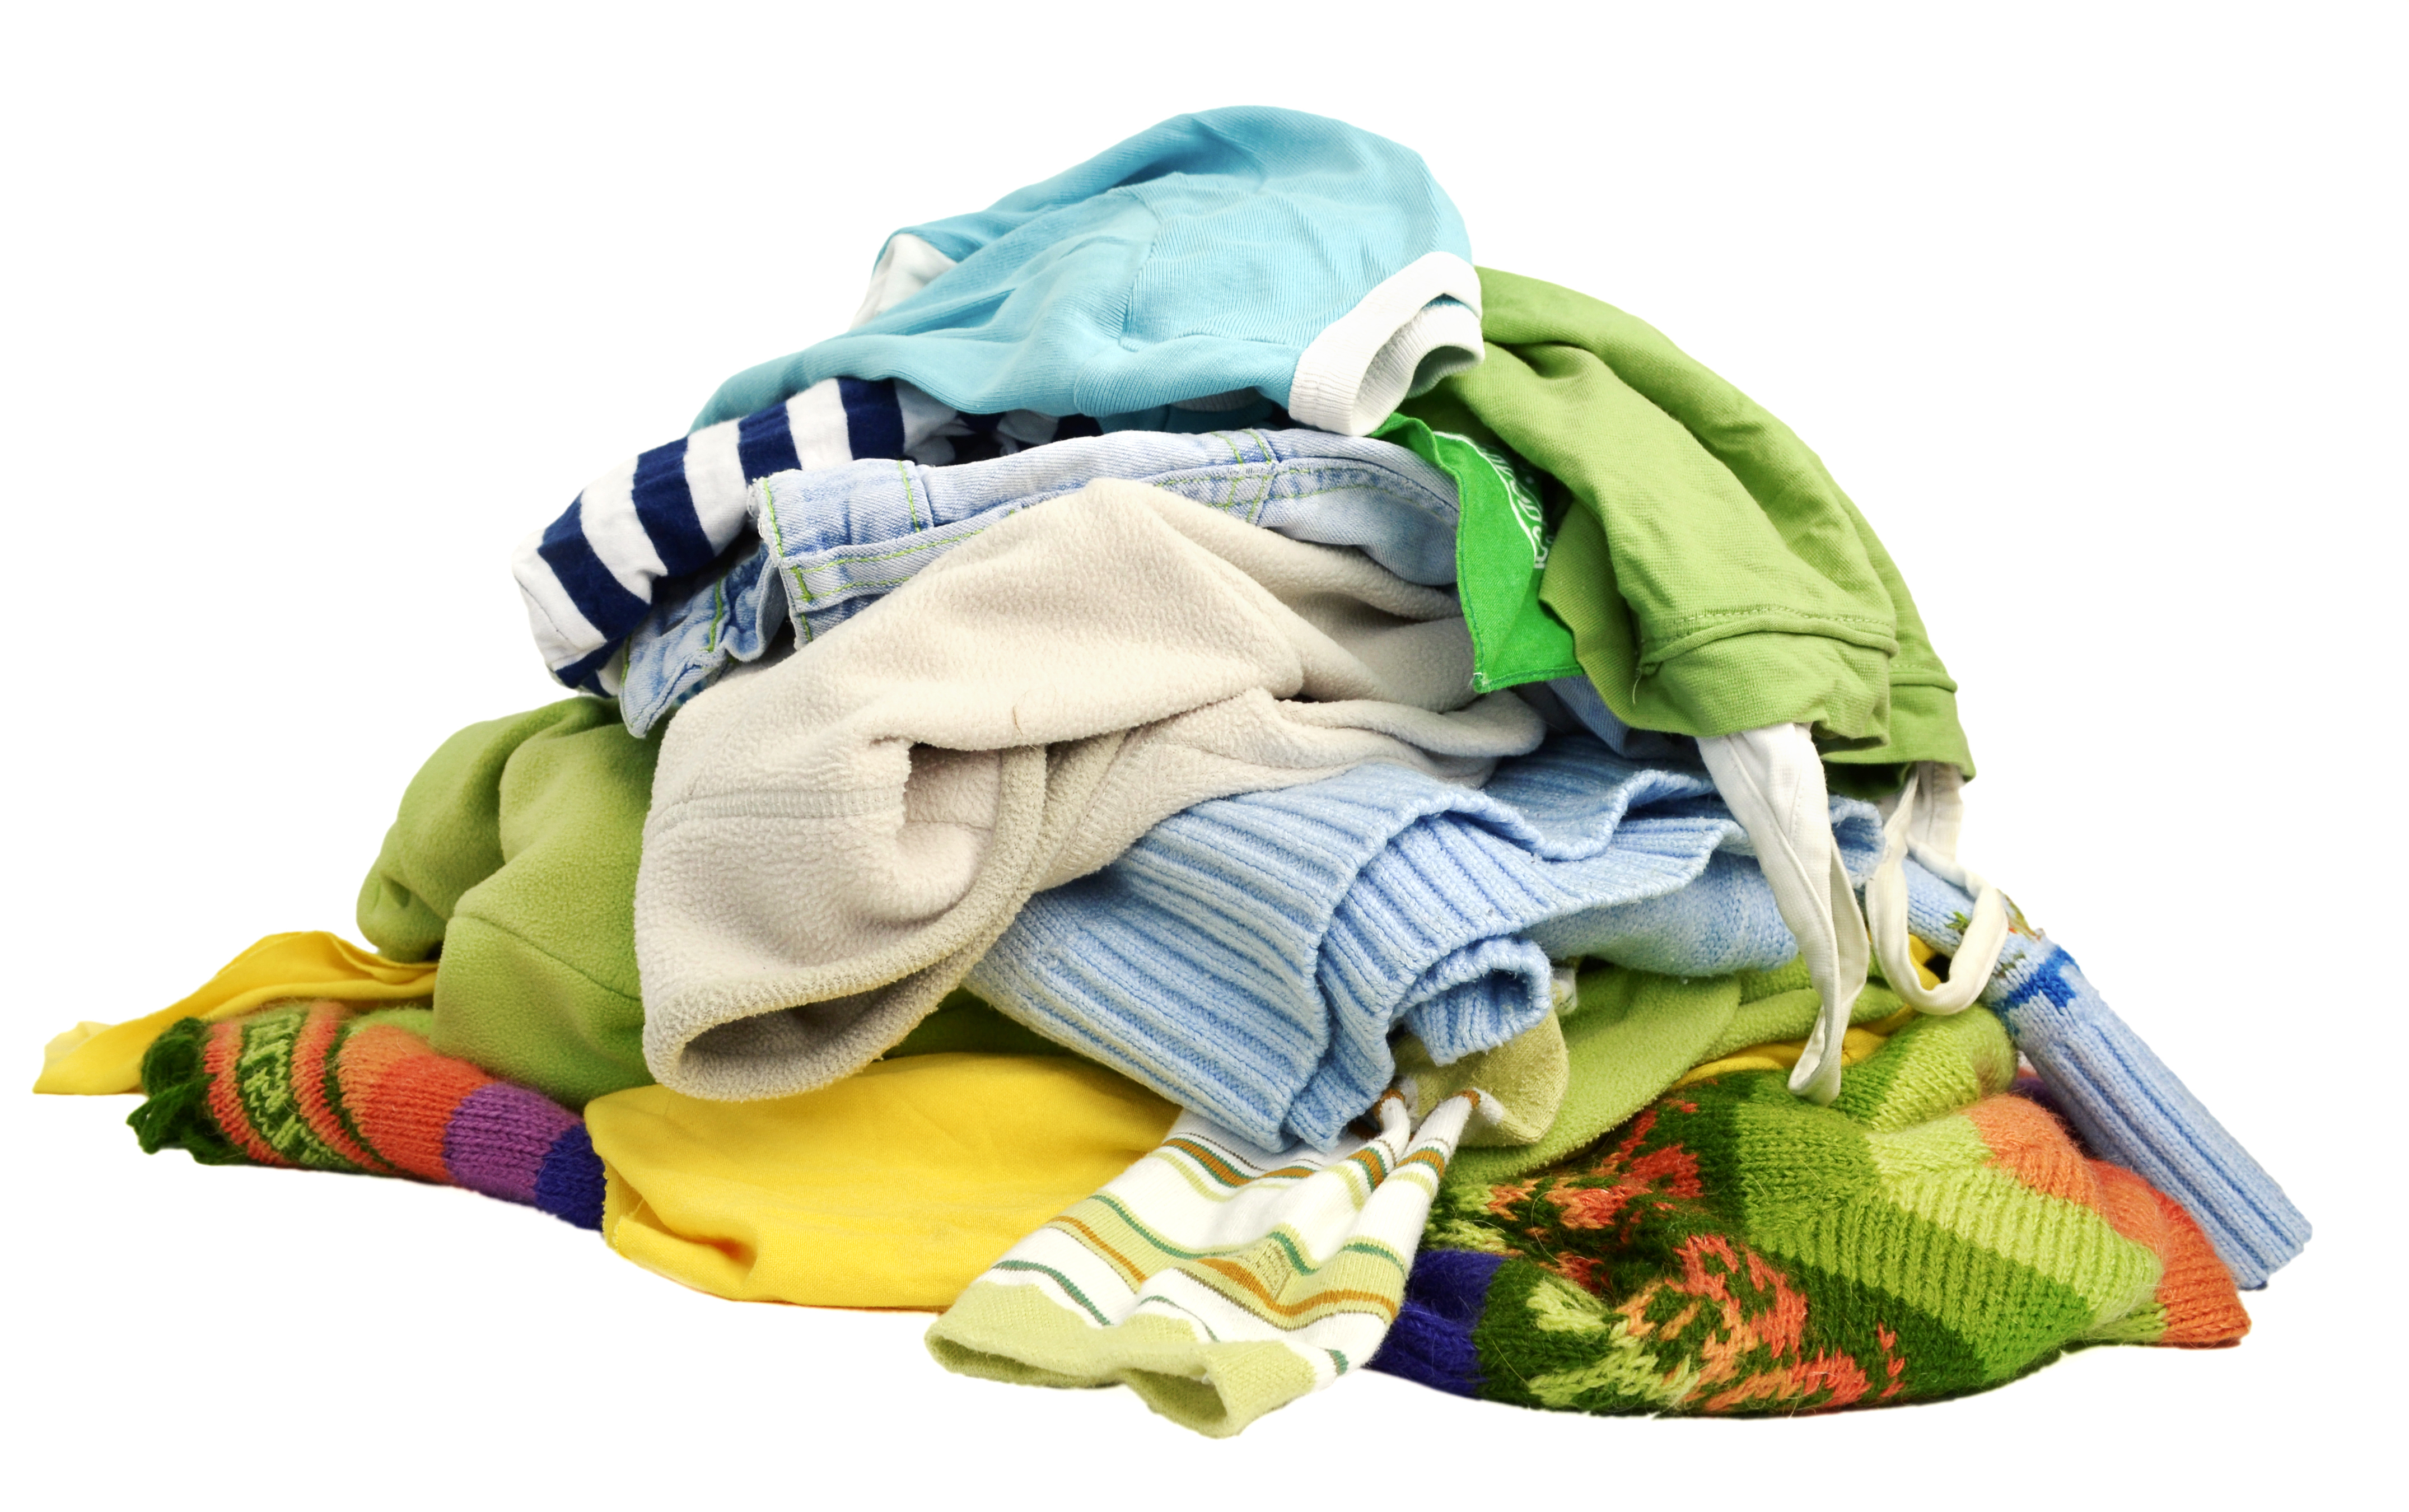 Une pile de vêtements sur le sol | Source : Shutterstock